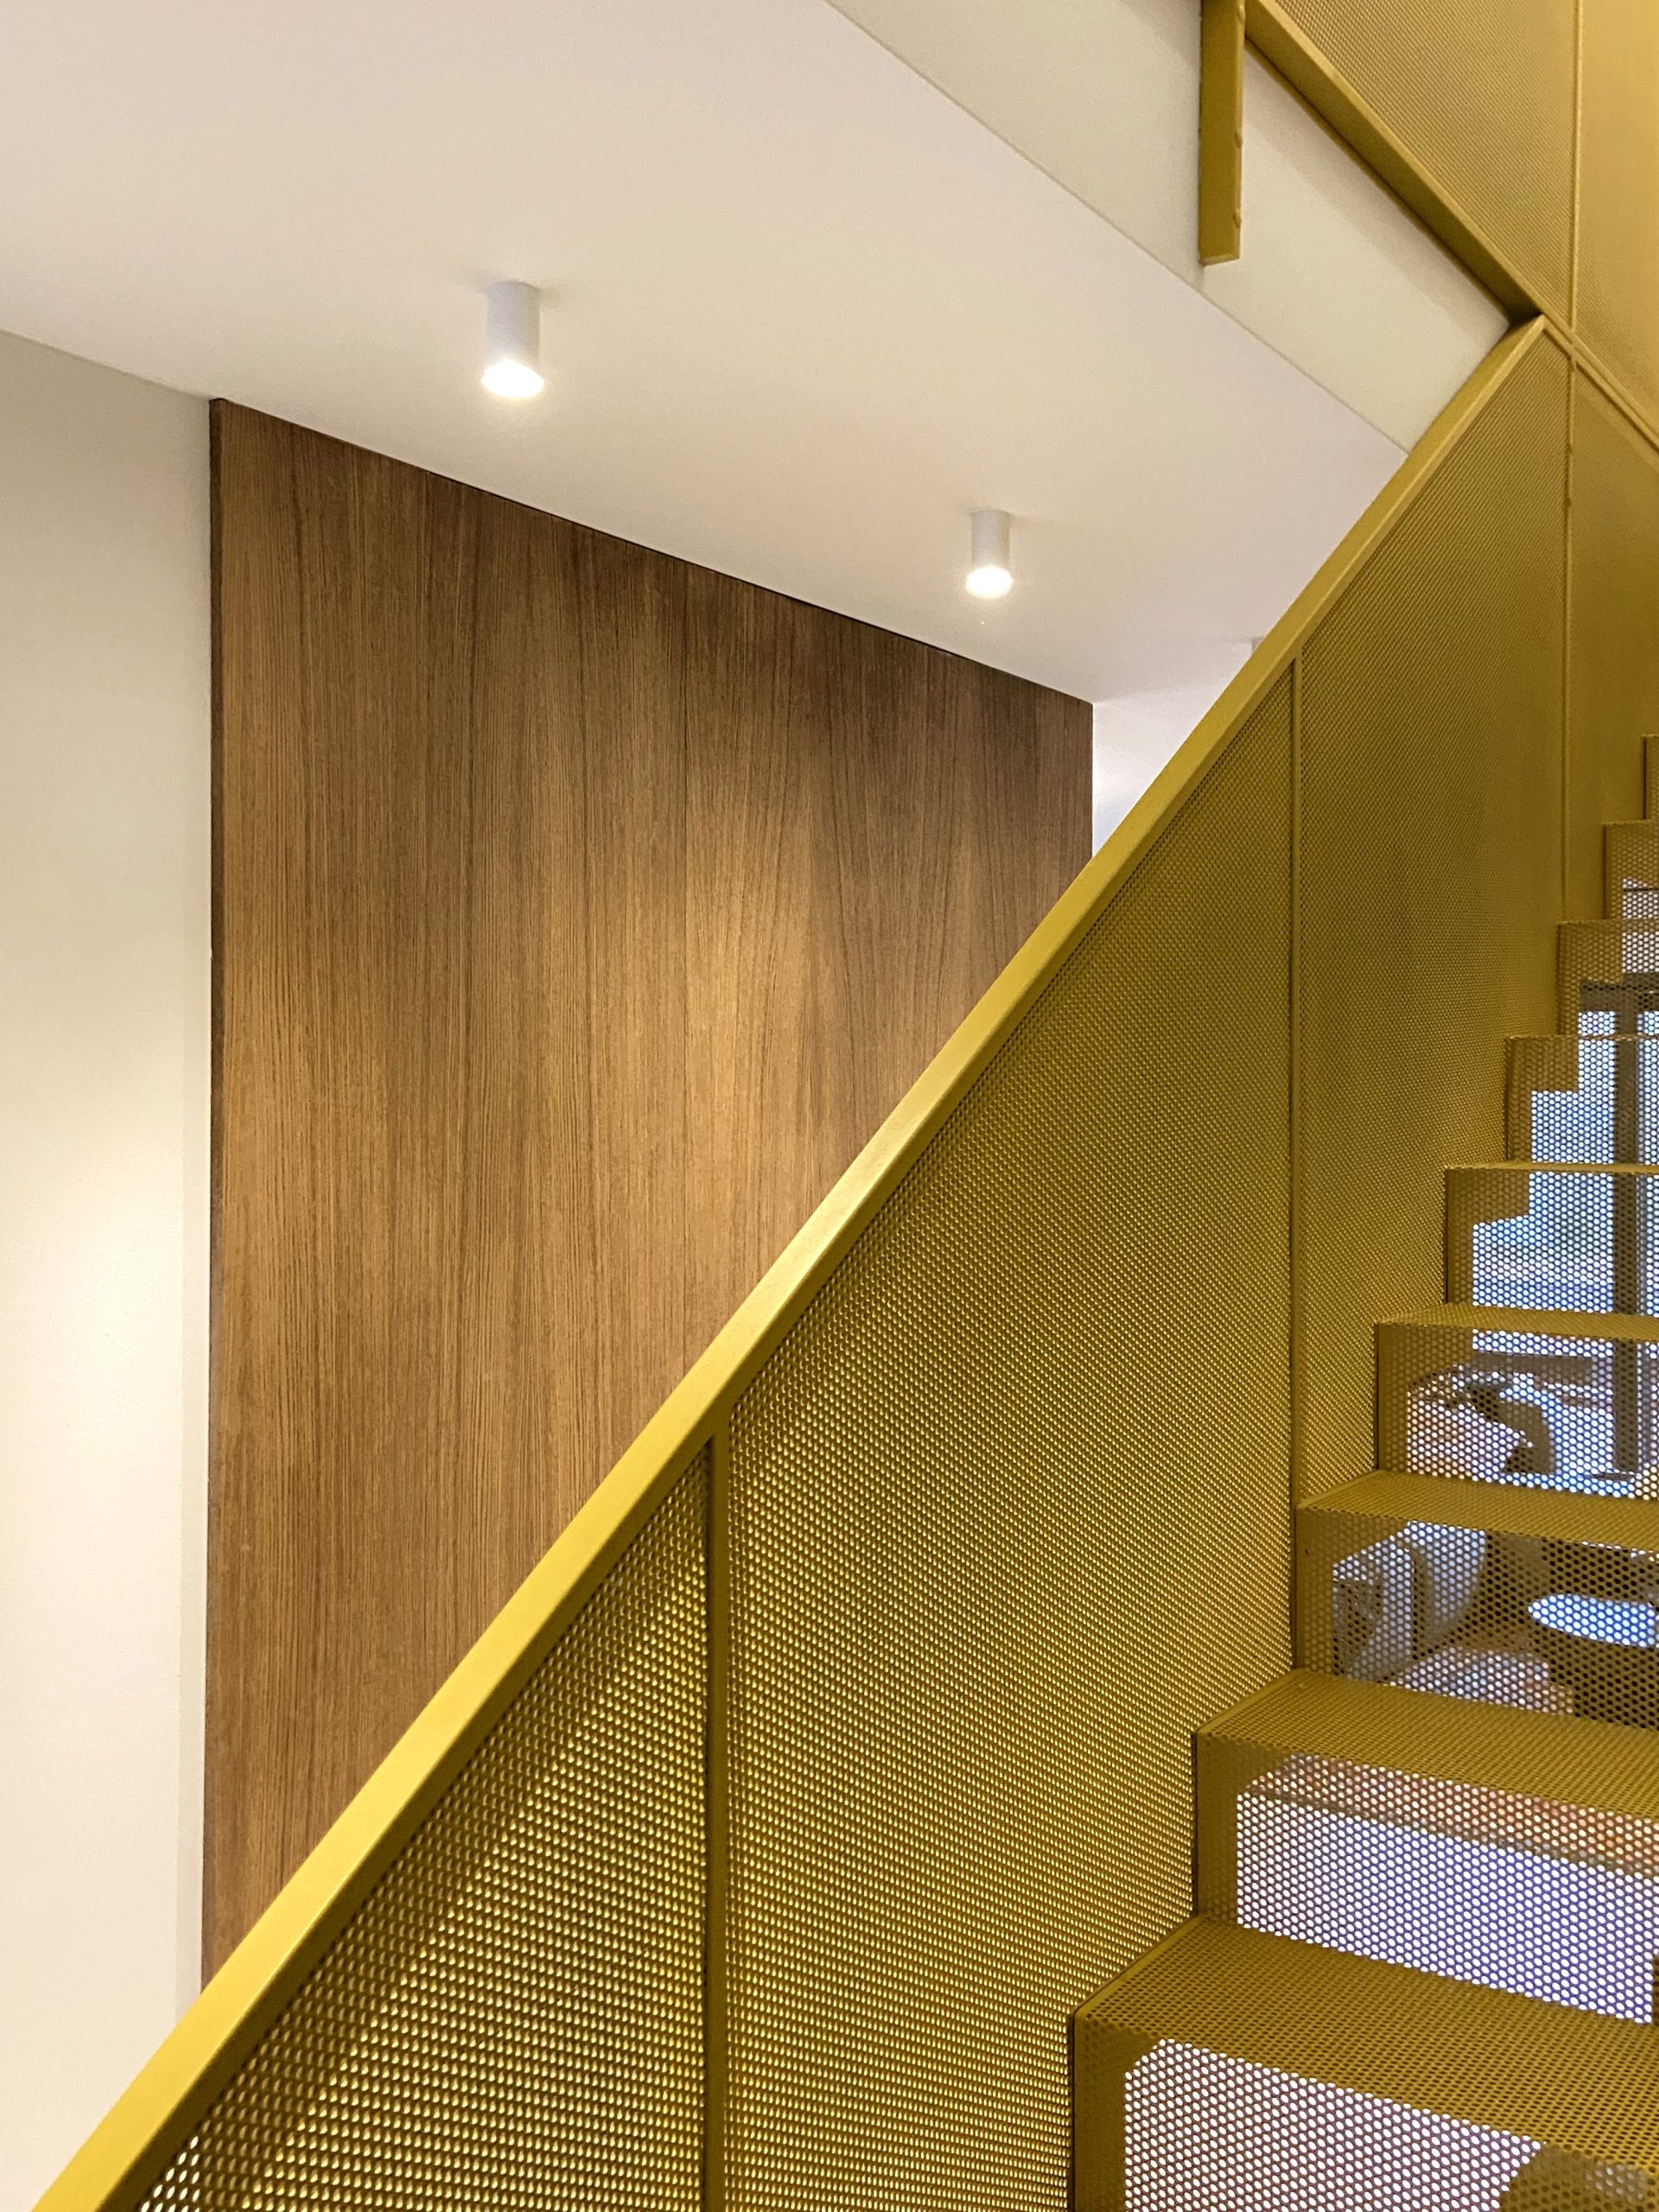 schody dywanowe w kolorze musztardowym, metal stairs, mustard stairs